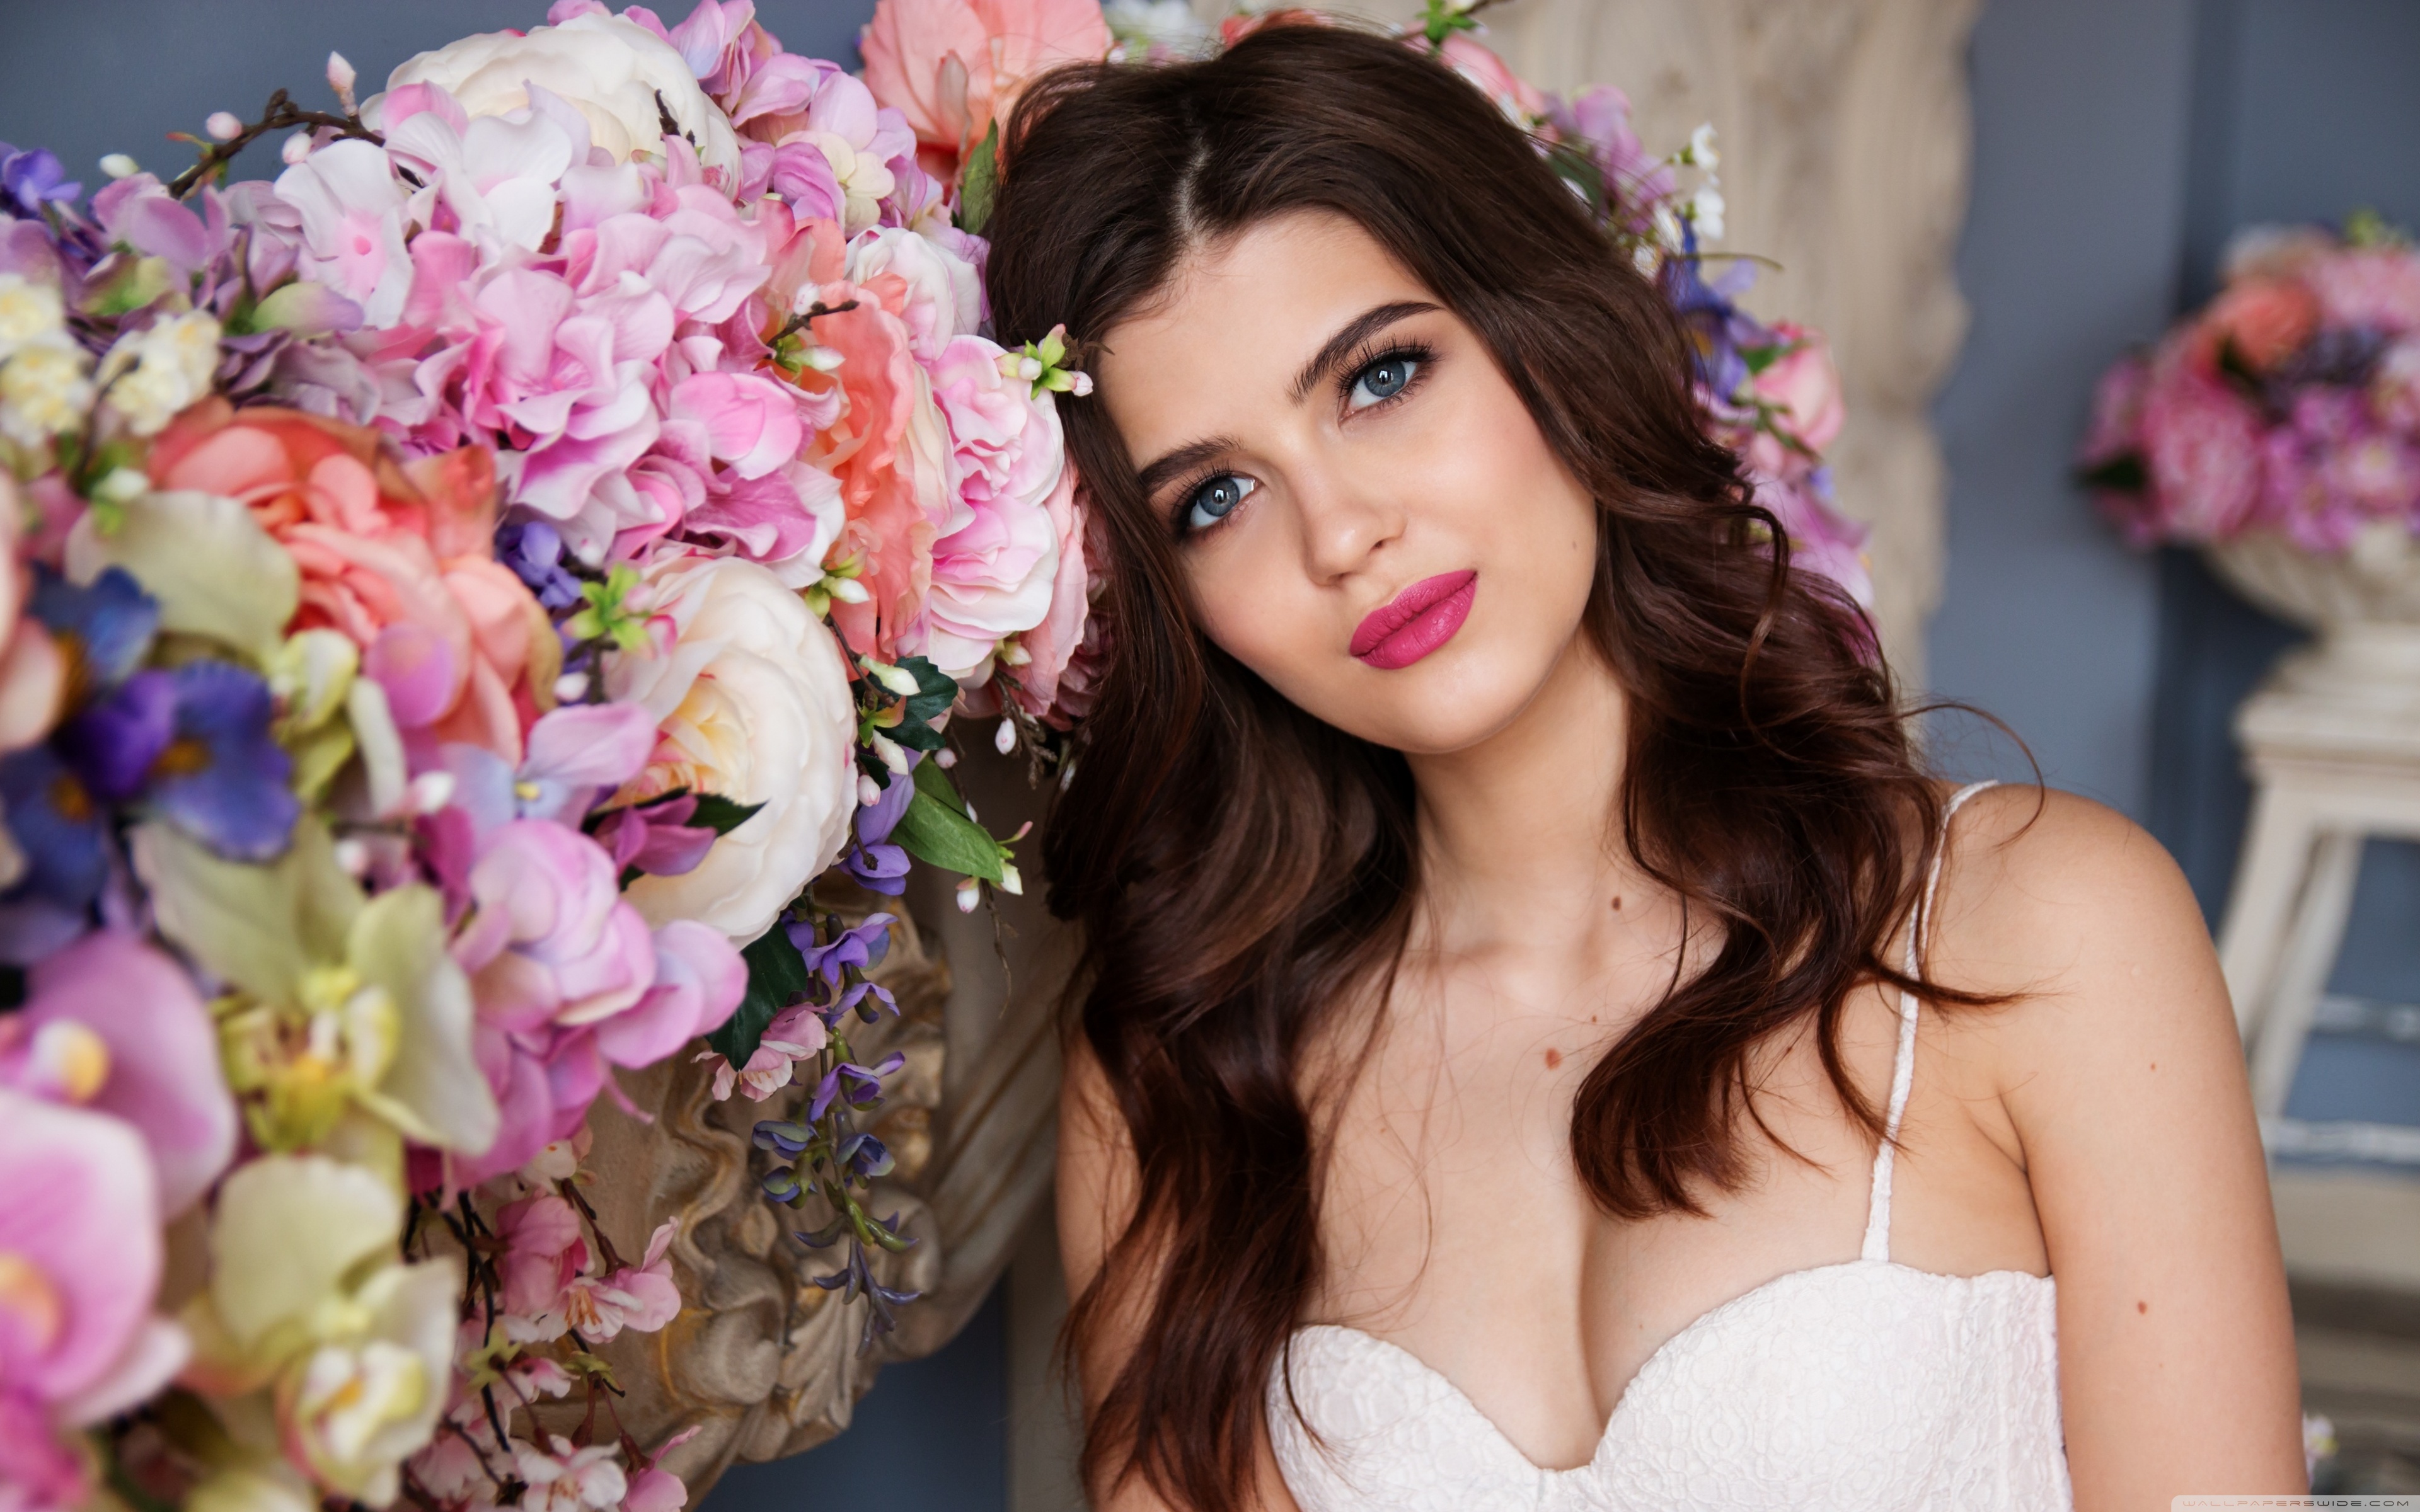 Beautiful Russian Girl Flowers 4k HD Desktop Wallpaper For